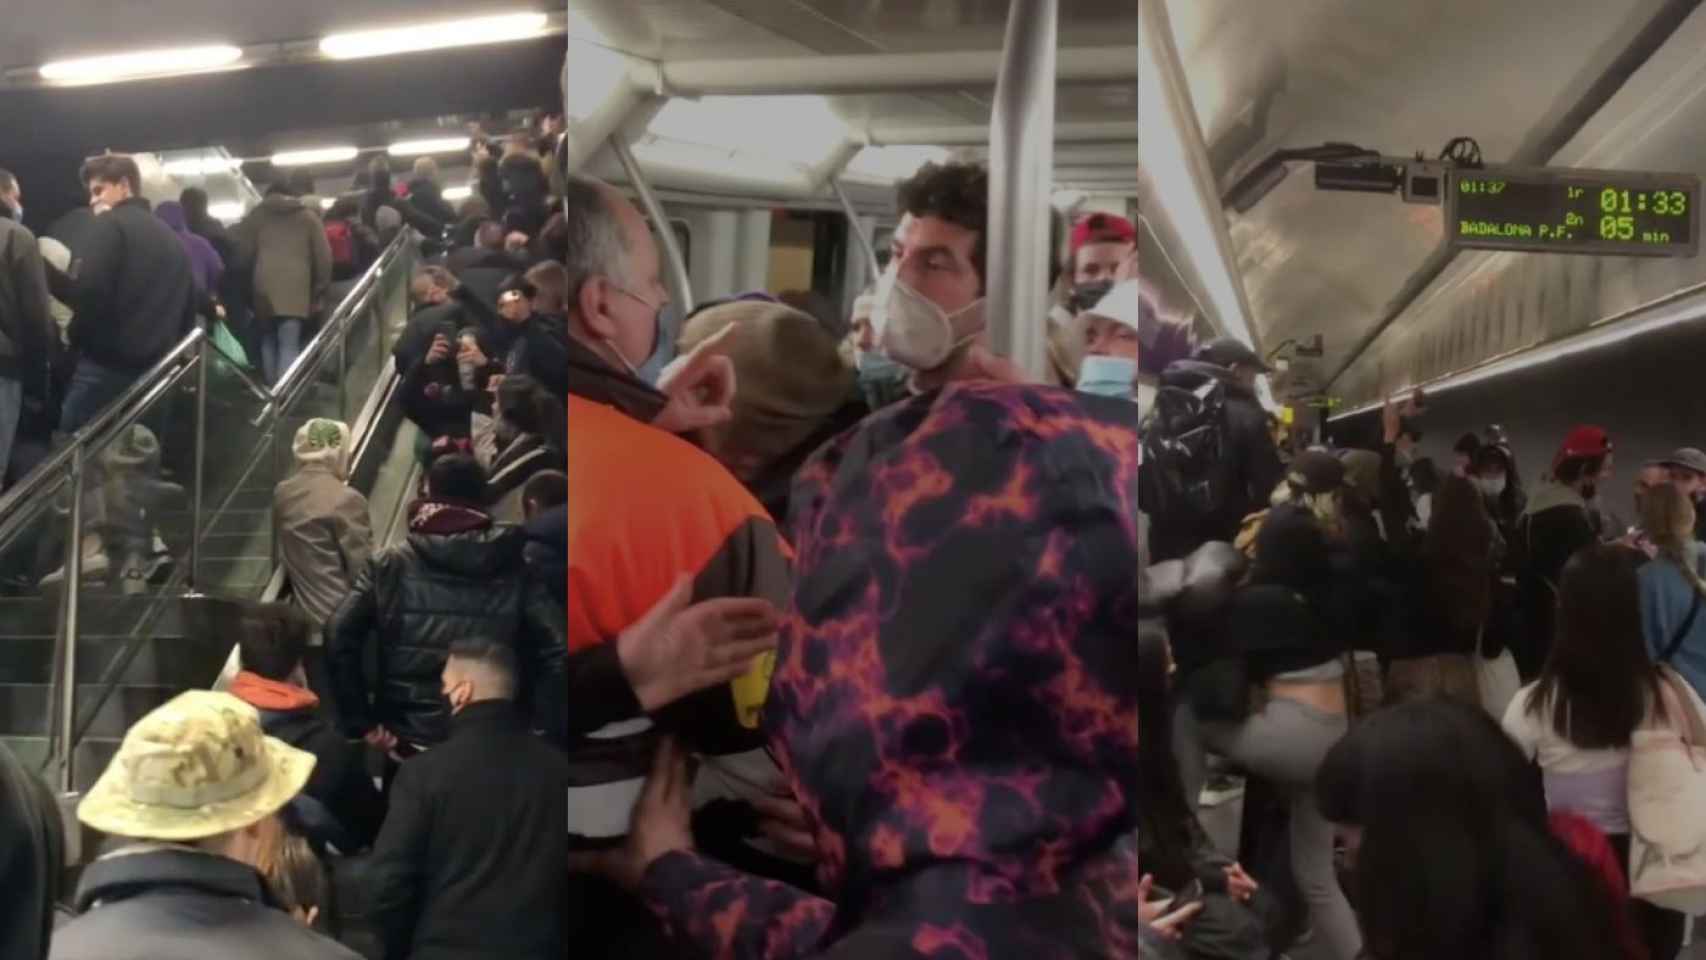 Jóvenes montan 'raves' multitudinarias en el metro de Barcelona